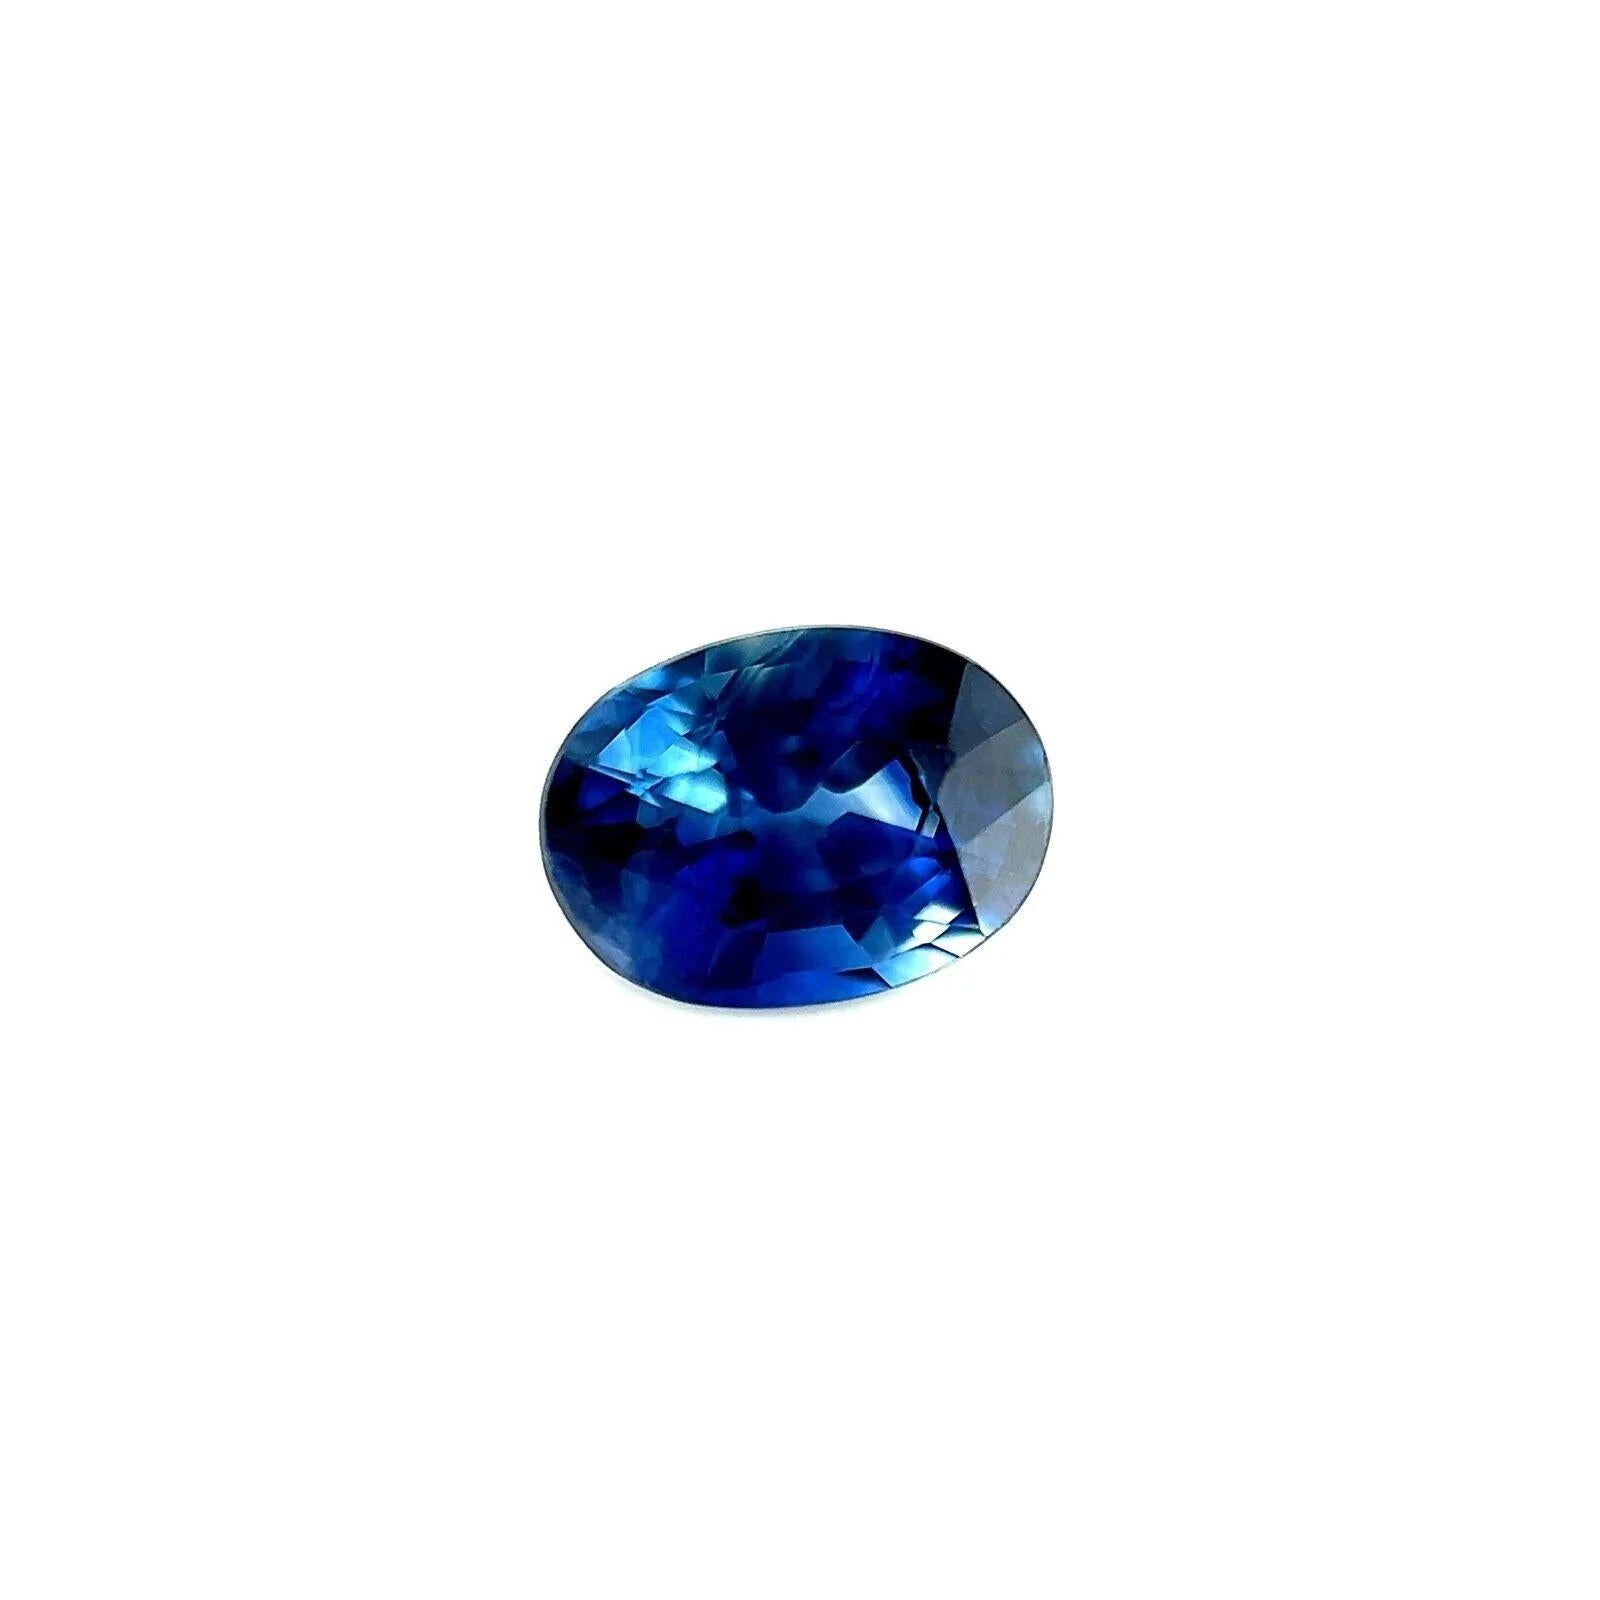 Fein 1,05ct Vivid Blue Oval Cut Sapphire Seltene Thai Edelstein 6,6x4,8mm VVS

Fine Vivid Blue Oval Cut Sapphire Edelstein.
1,05 Karat mit einer schönen und einzigartigen lebhaften blauen Farbe und ausgezeichneter Klarheit, ein sehr sauberer Stein,